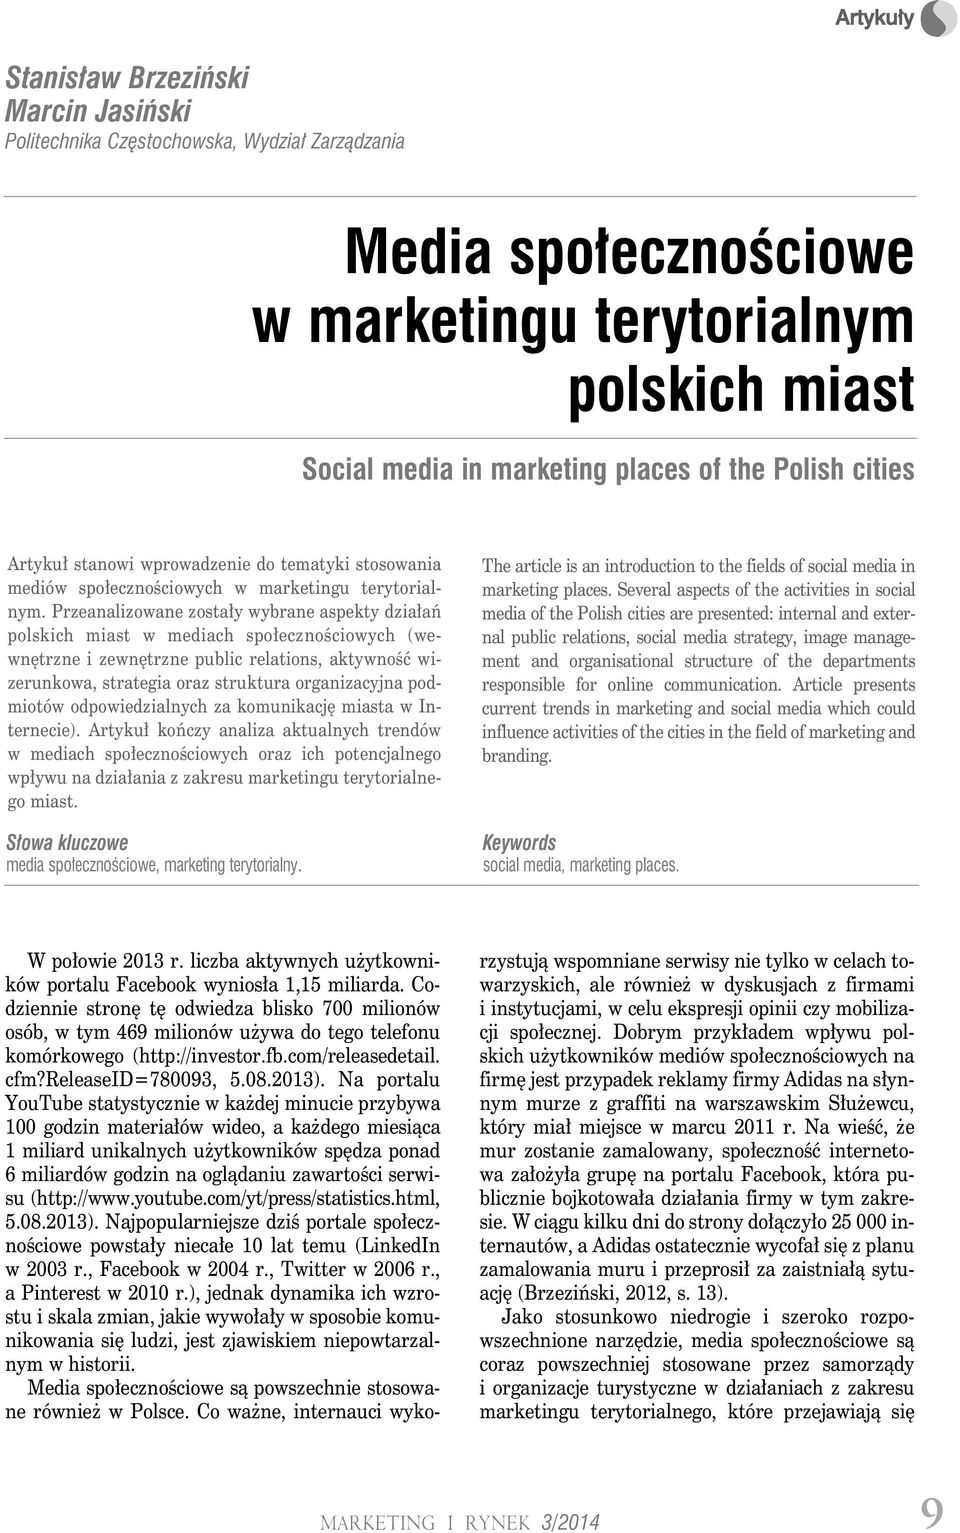 Przeanalizowane zostały wybrane aspekty działań polskich miast w mediach społecznościowych (wewnętrzne i zewnętrzne public relations, aktywność wizerunkowa, strategia oraz struktura organizacyjna